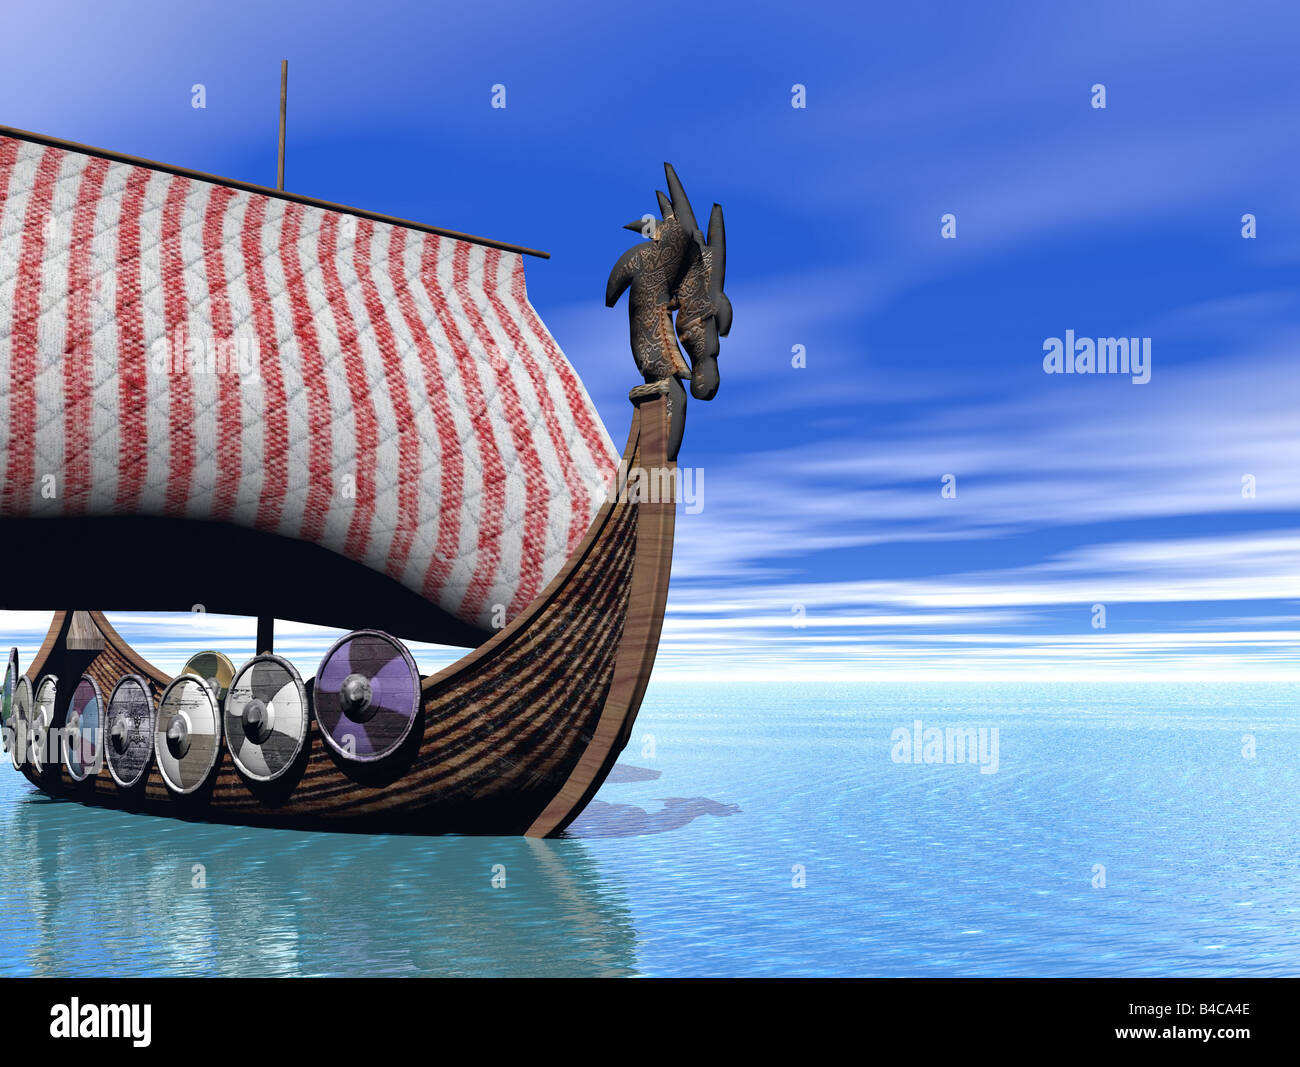 3d illustration d'un drakkar viking ship at sea Banque D'Images